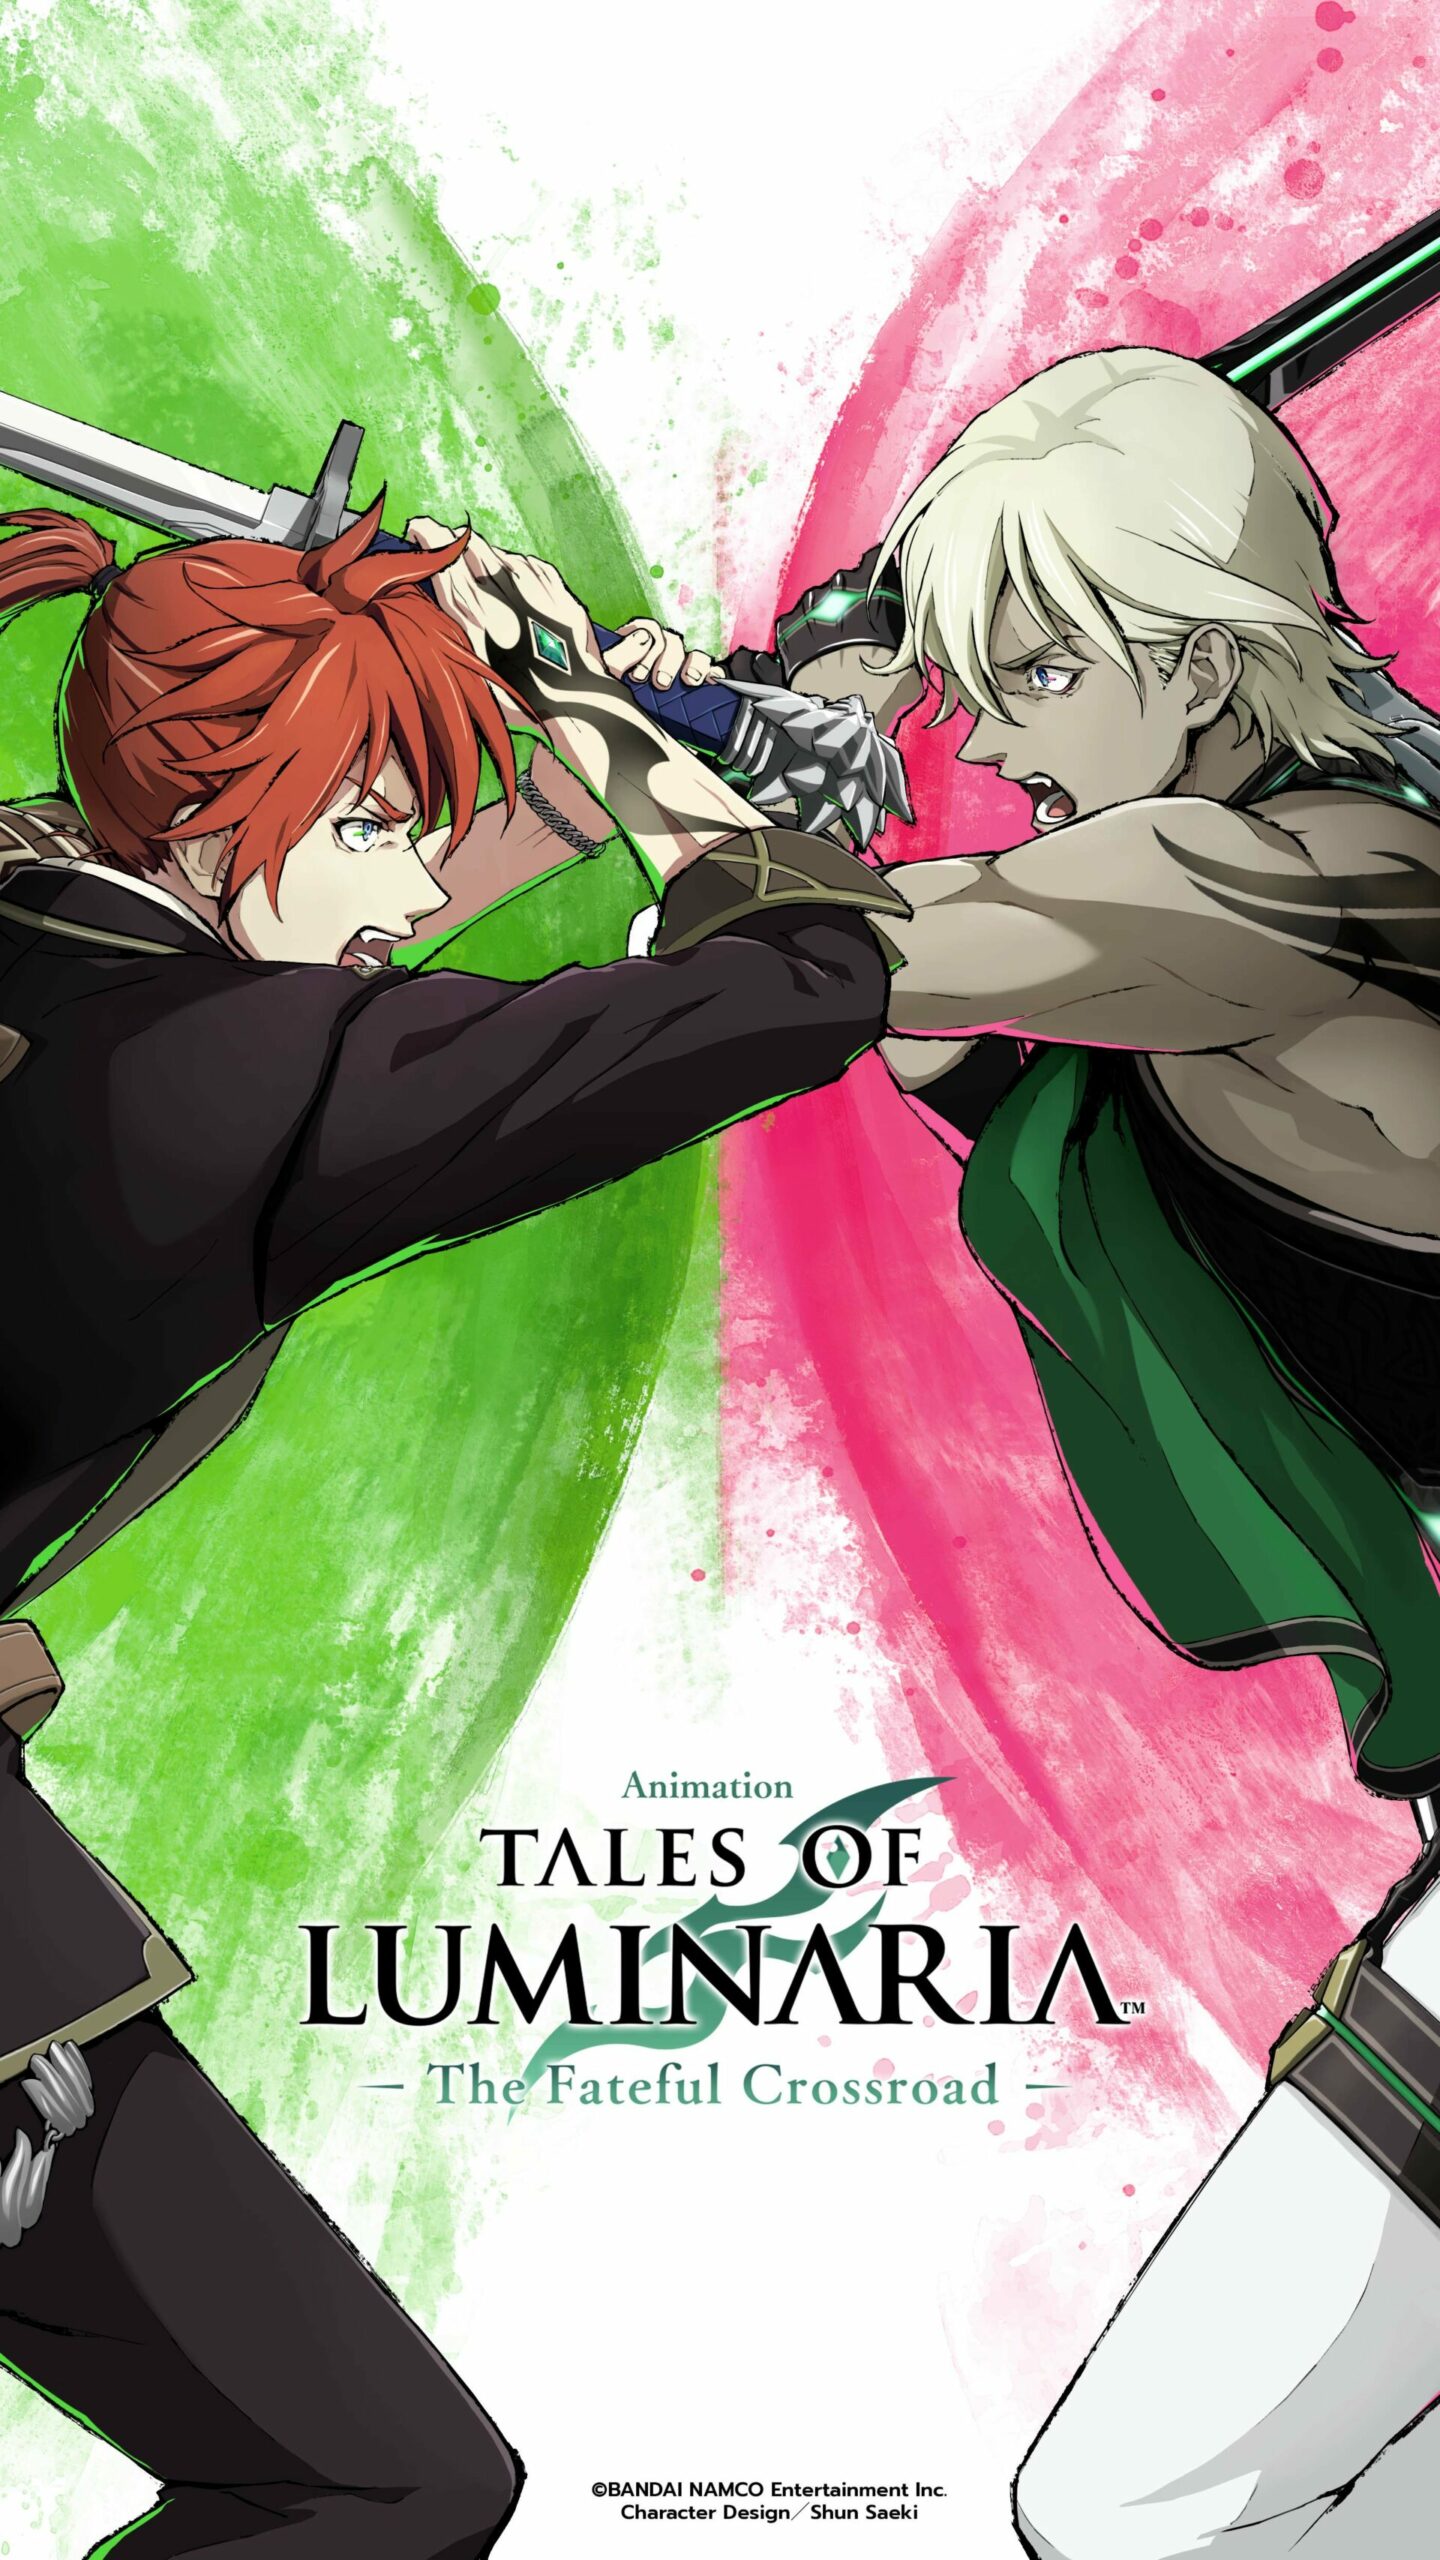 Tales of Luminaria the Fateful Crossroad (ONA Episode) anime key visual